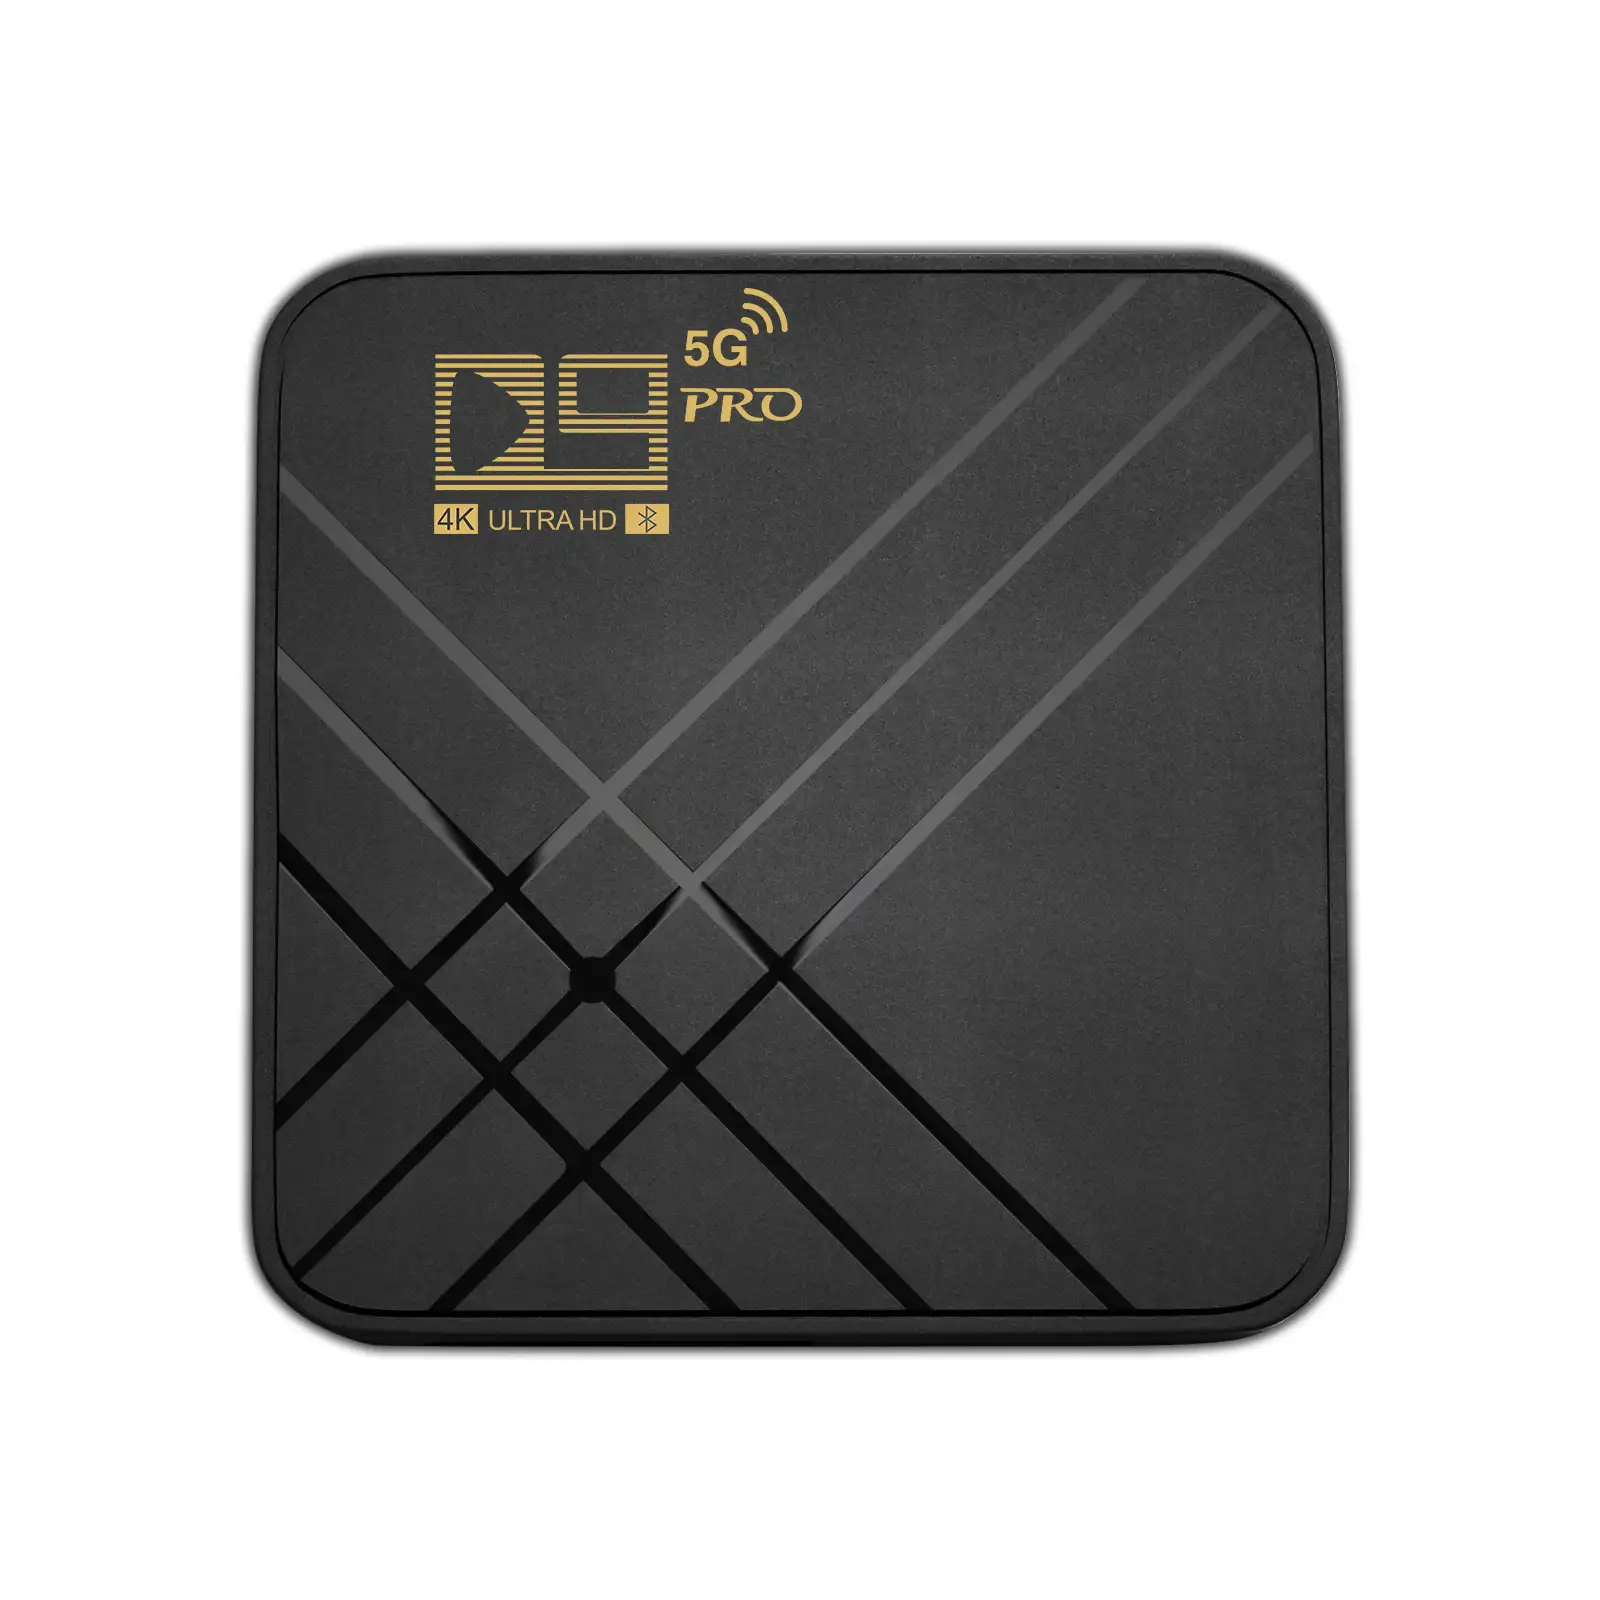 गर्म बेच 4K D9 प्रो 5G 1G रैम 8G रॉम एंड्रॉयड 10 स्मार्ट टीवी बॉक्स D9-J202 चिपसेट एंड्रॉयड सेट टॉप बॉक्स समर्थन गूगल खेलने टीवी दुकान